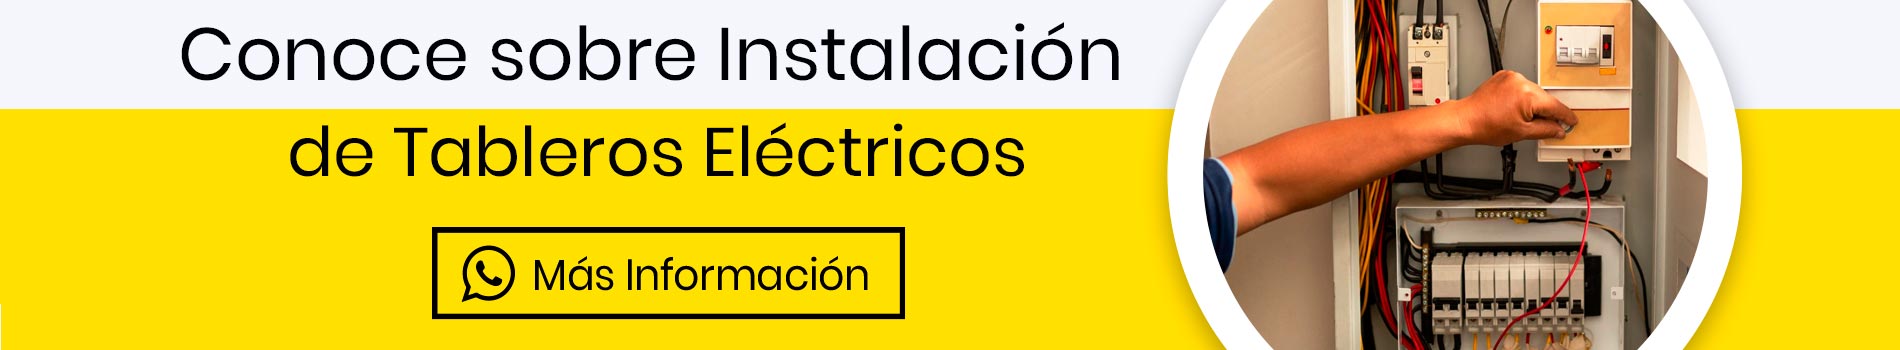 cta-tableros-electricos-instalacion-informacion-